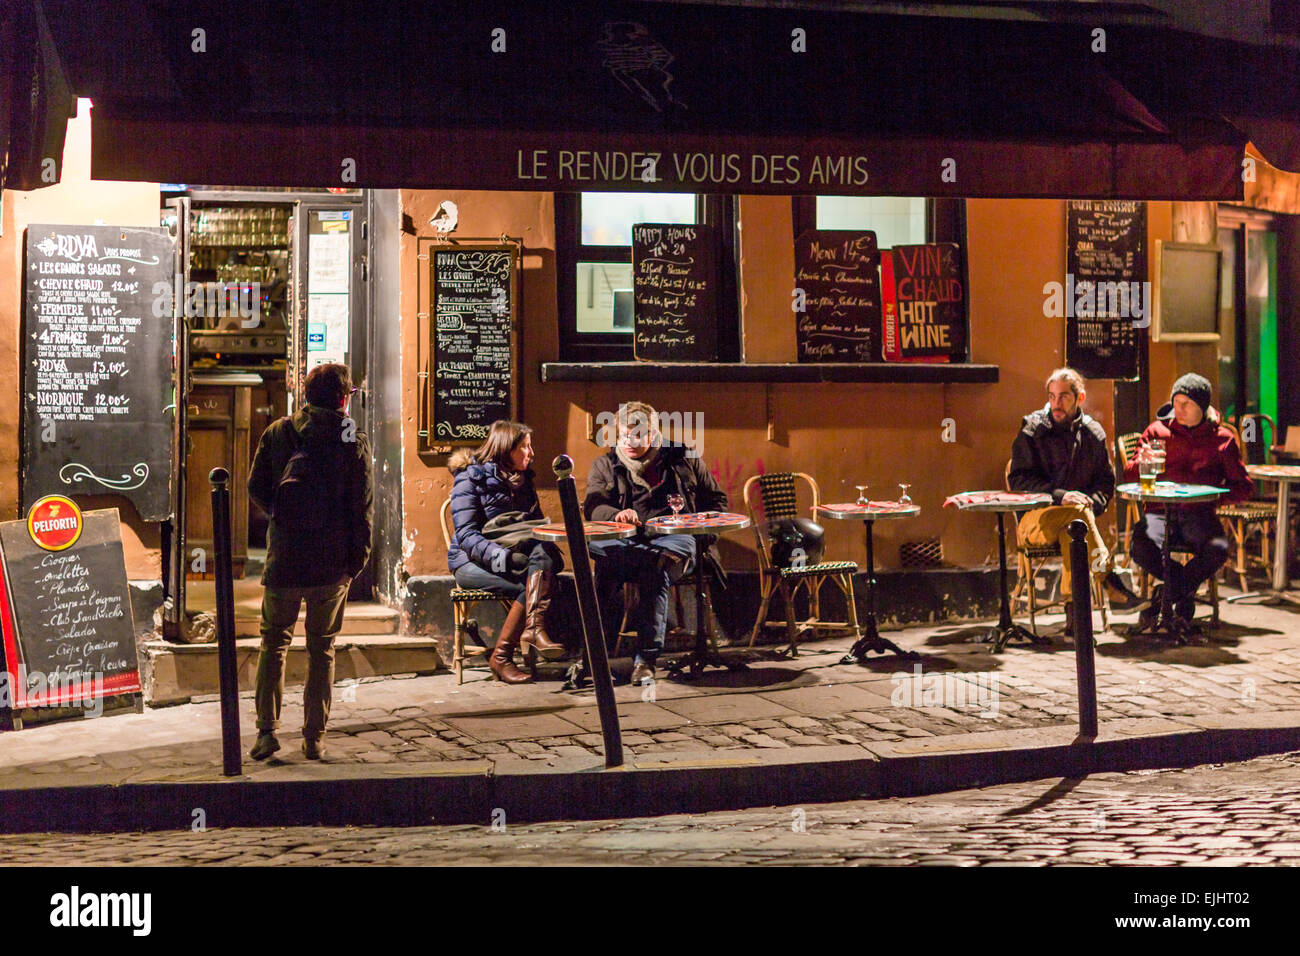 outdoor cafe restaurant le rendez vous des amis in paris france EJHT02